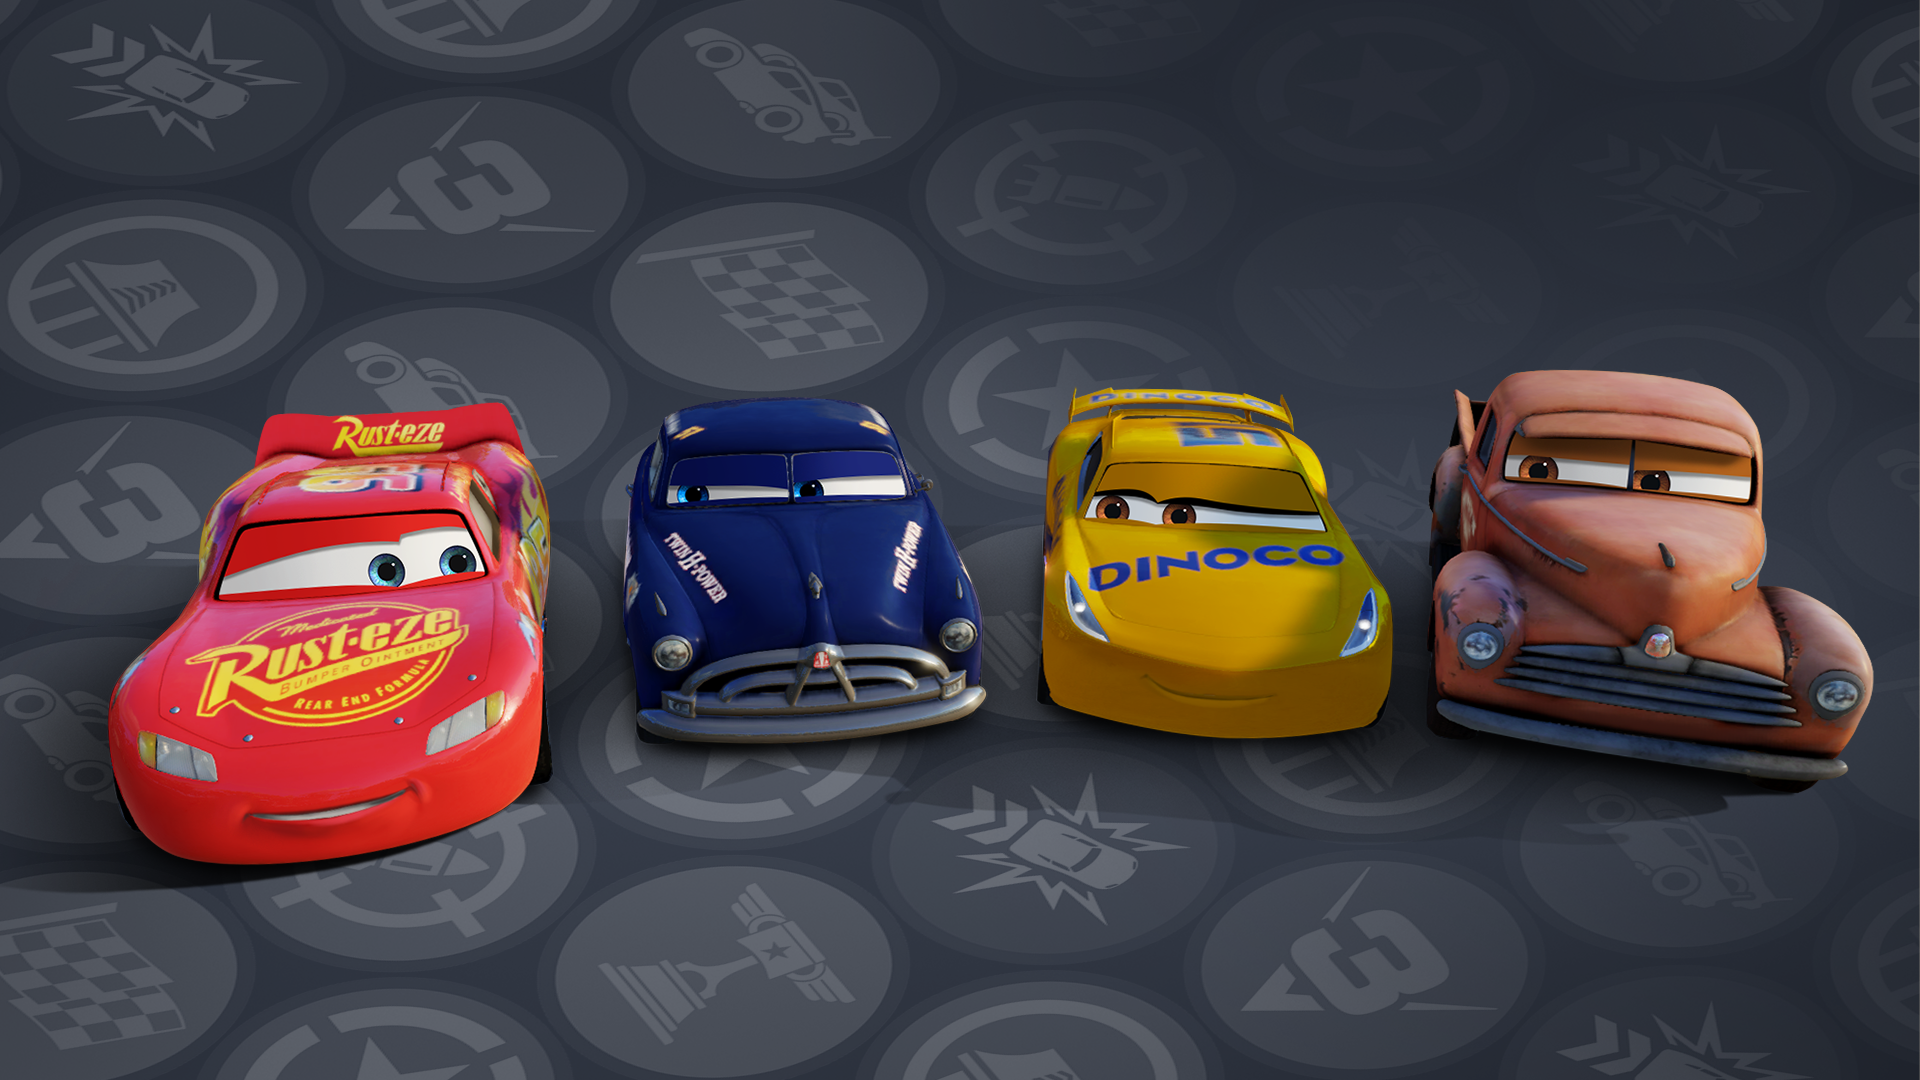 Cars 3 full. Cars 3: Driven to win. Cars 3 Driven to win персонажи. Cars 3 Driven to win Xbox 360. Cars 3 ps4.